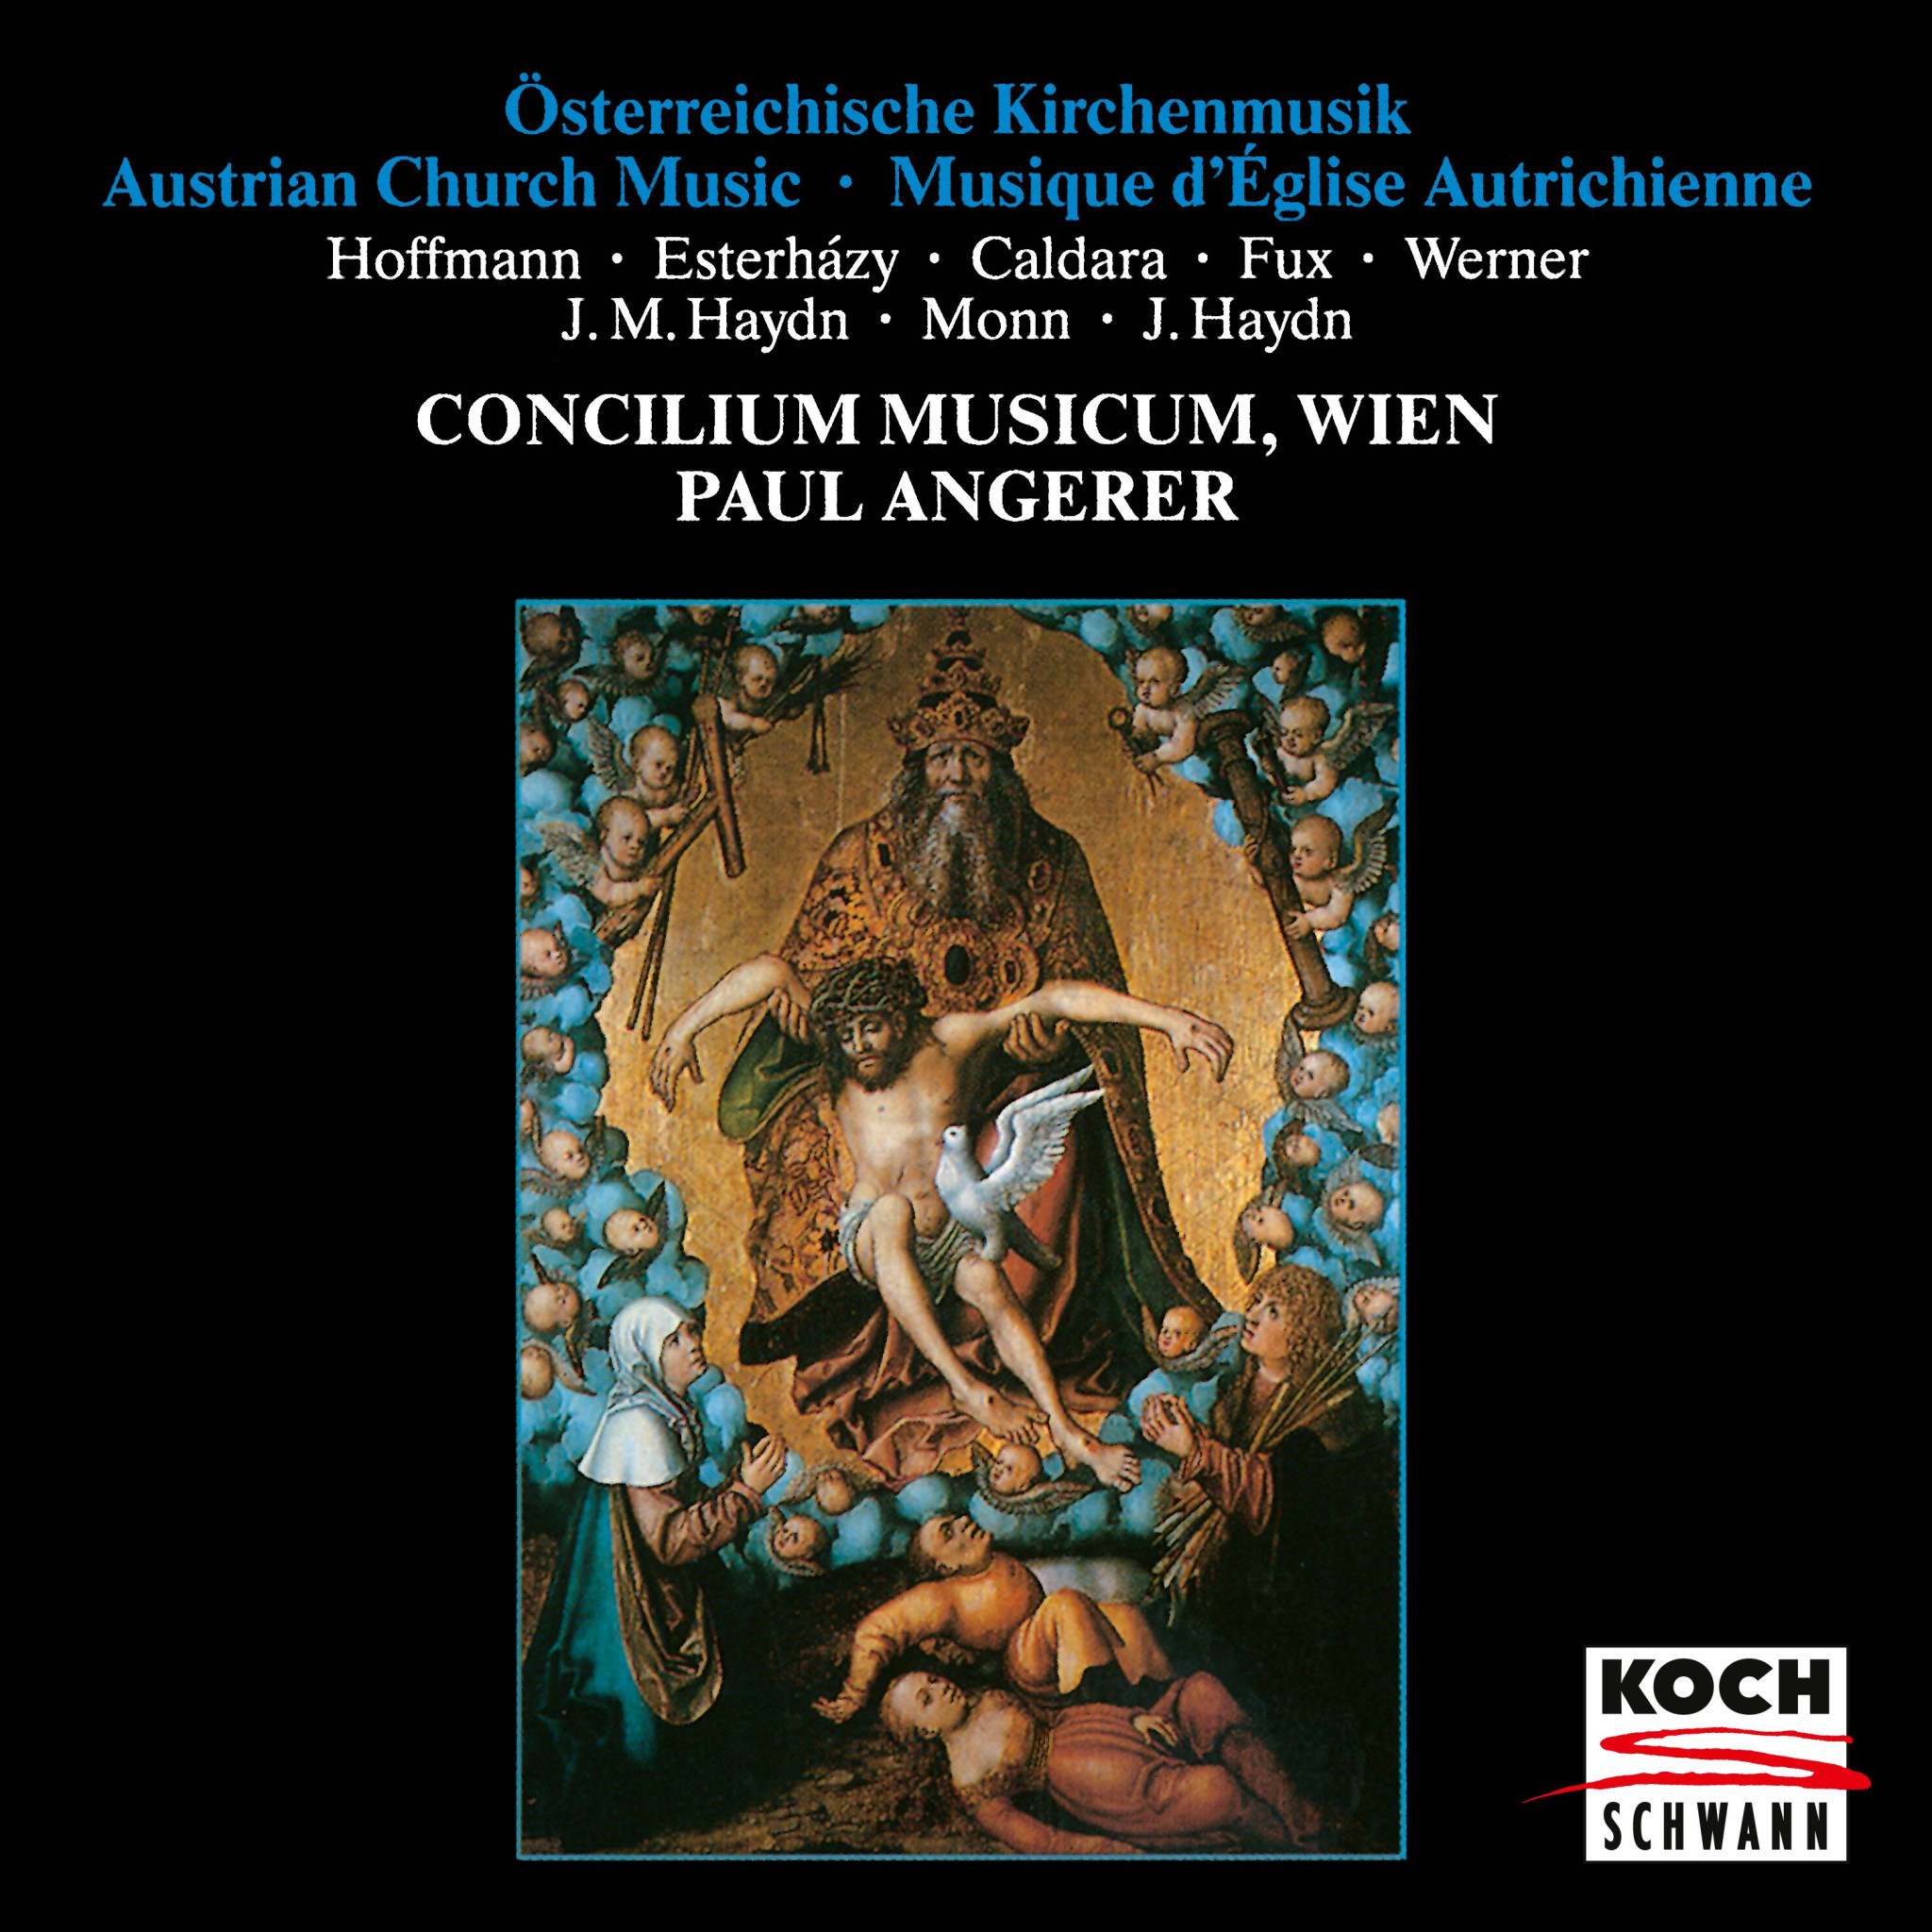 AUSTRIAN CHURCH MUSIC